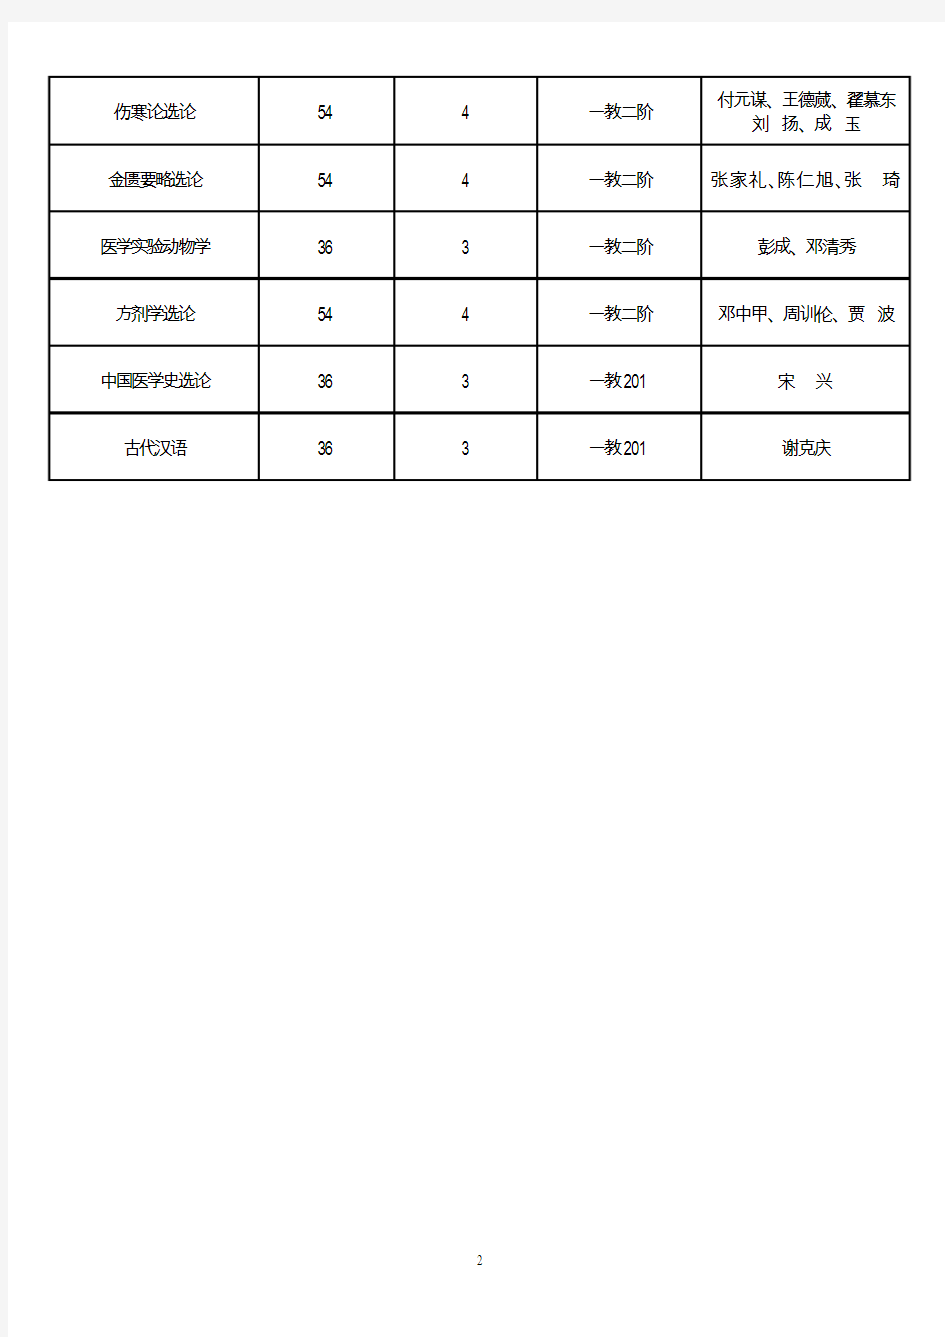 2006年春季学期成都中医药大学研究生分课程表(精)